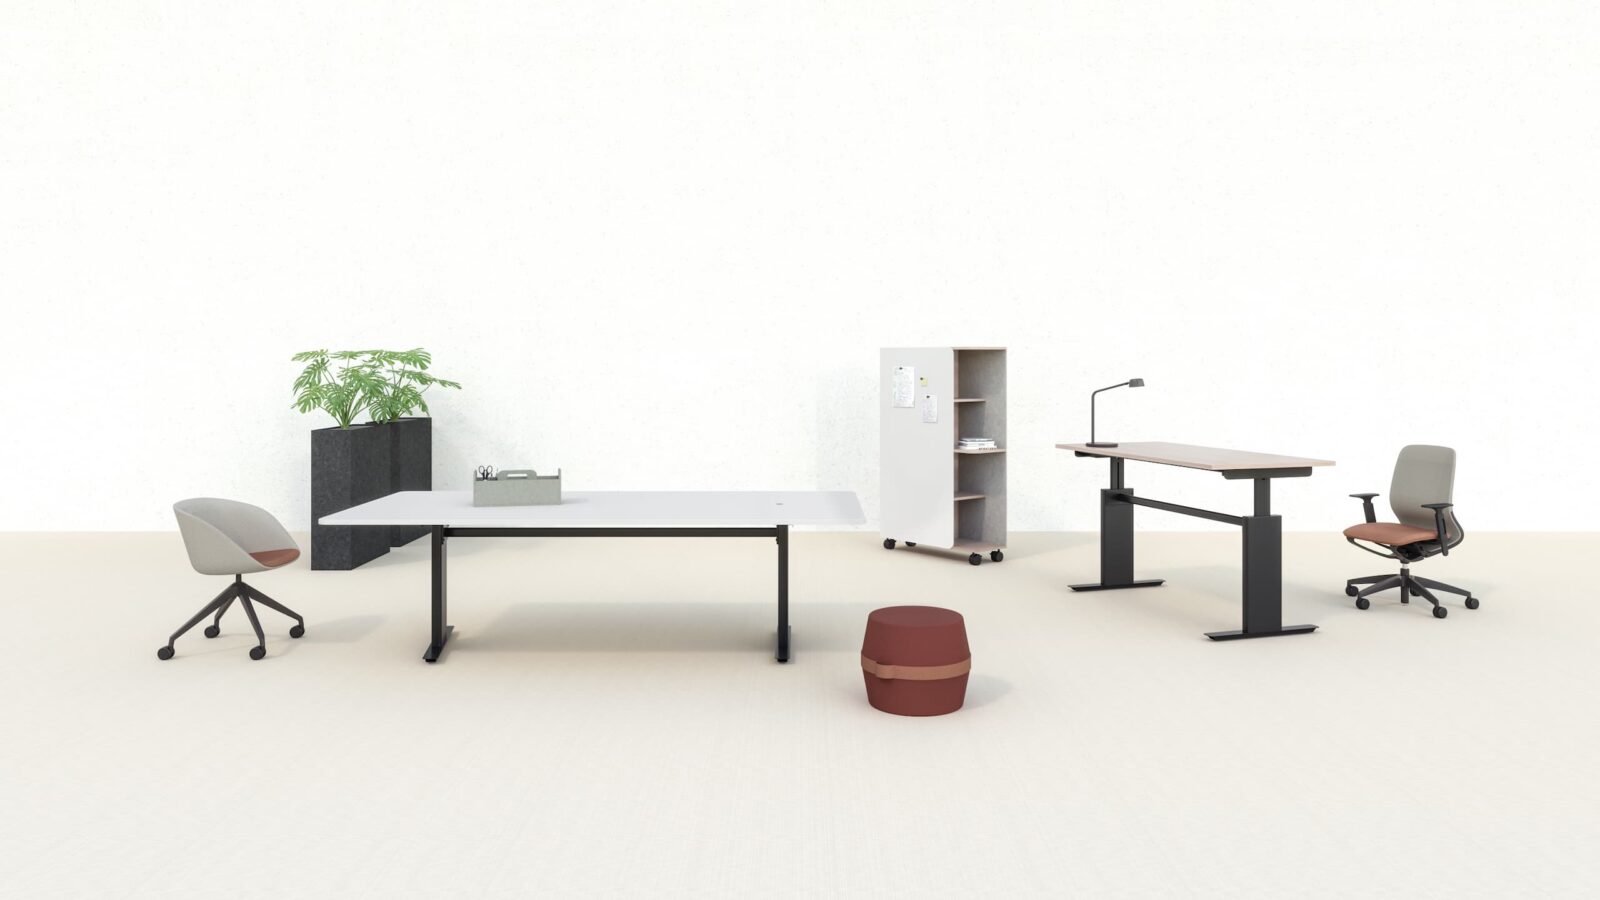 Szene zeigt einen Besprechungstisch und einen Schreibtisch mit höhenverstellbarer Tischplatte in einem cremefarbenen Milieu